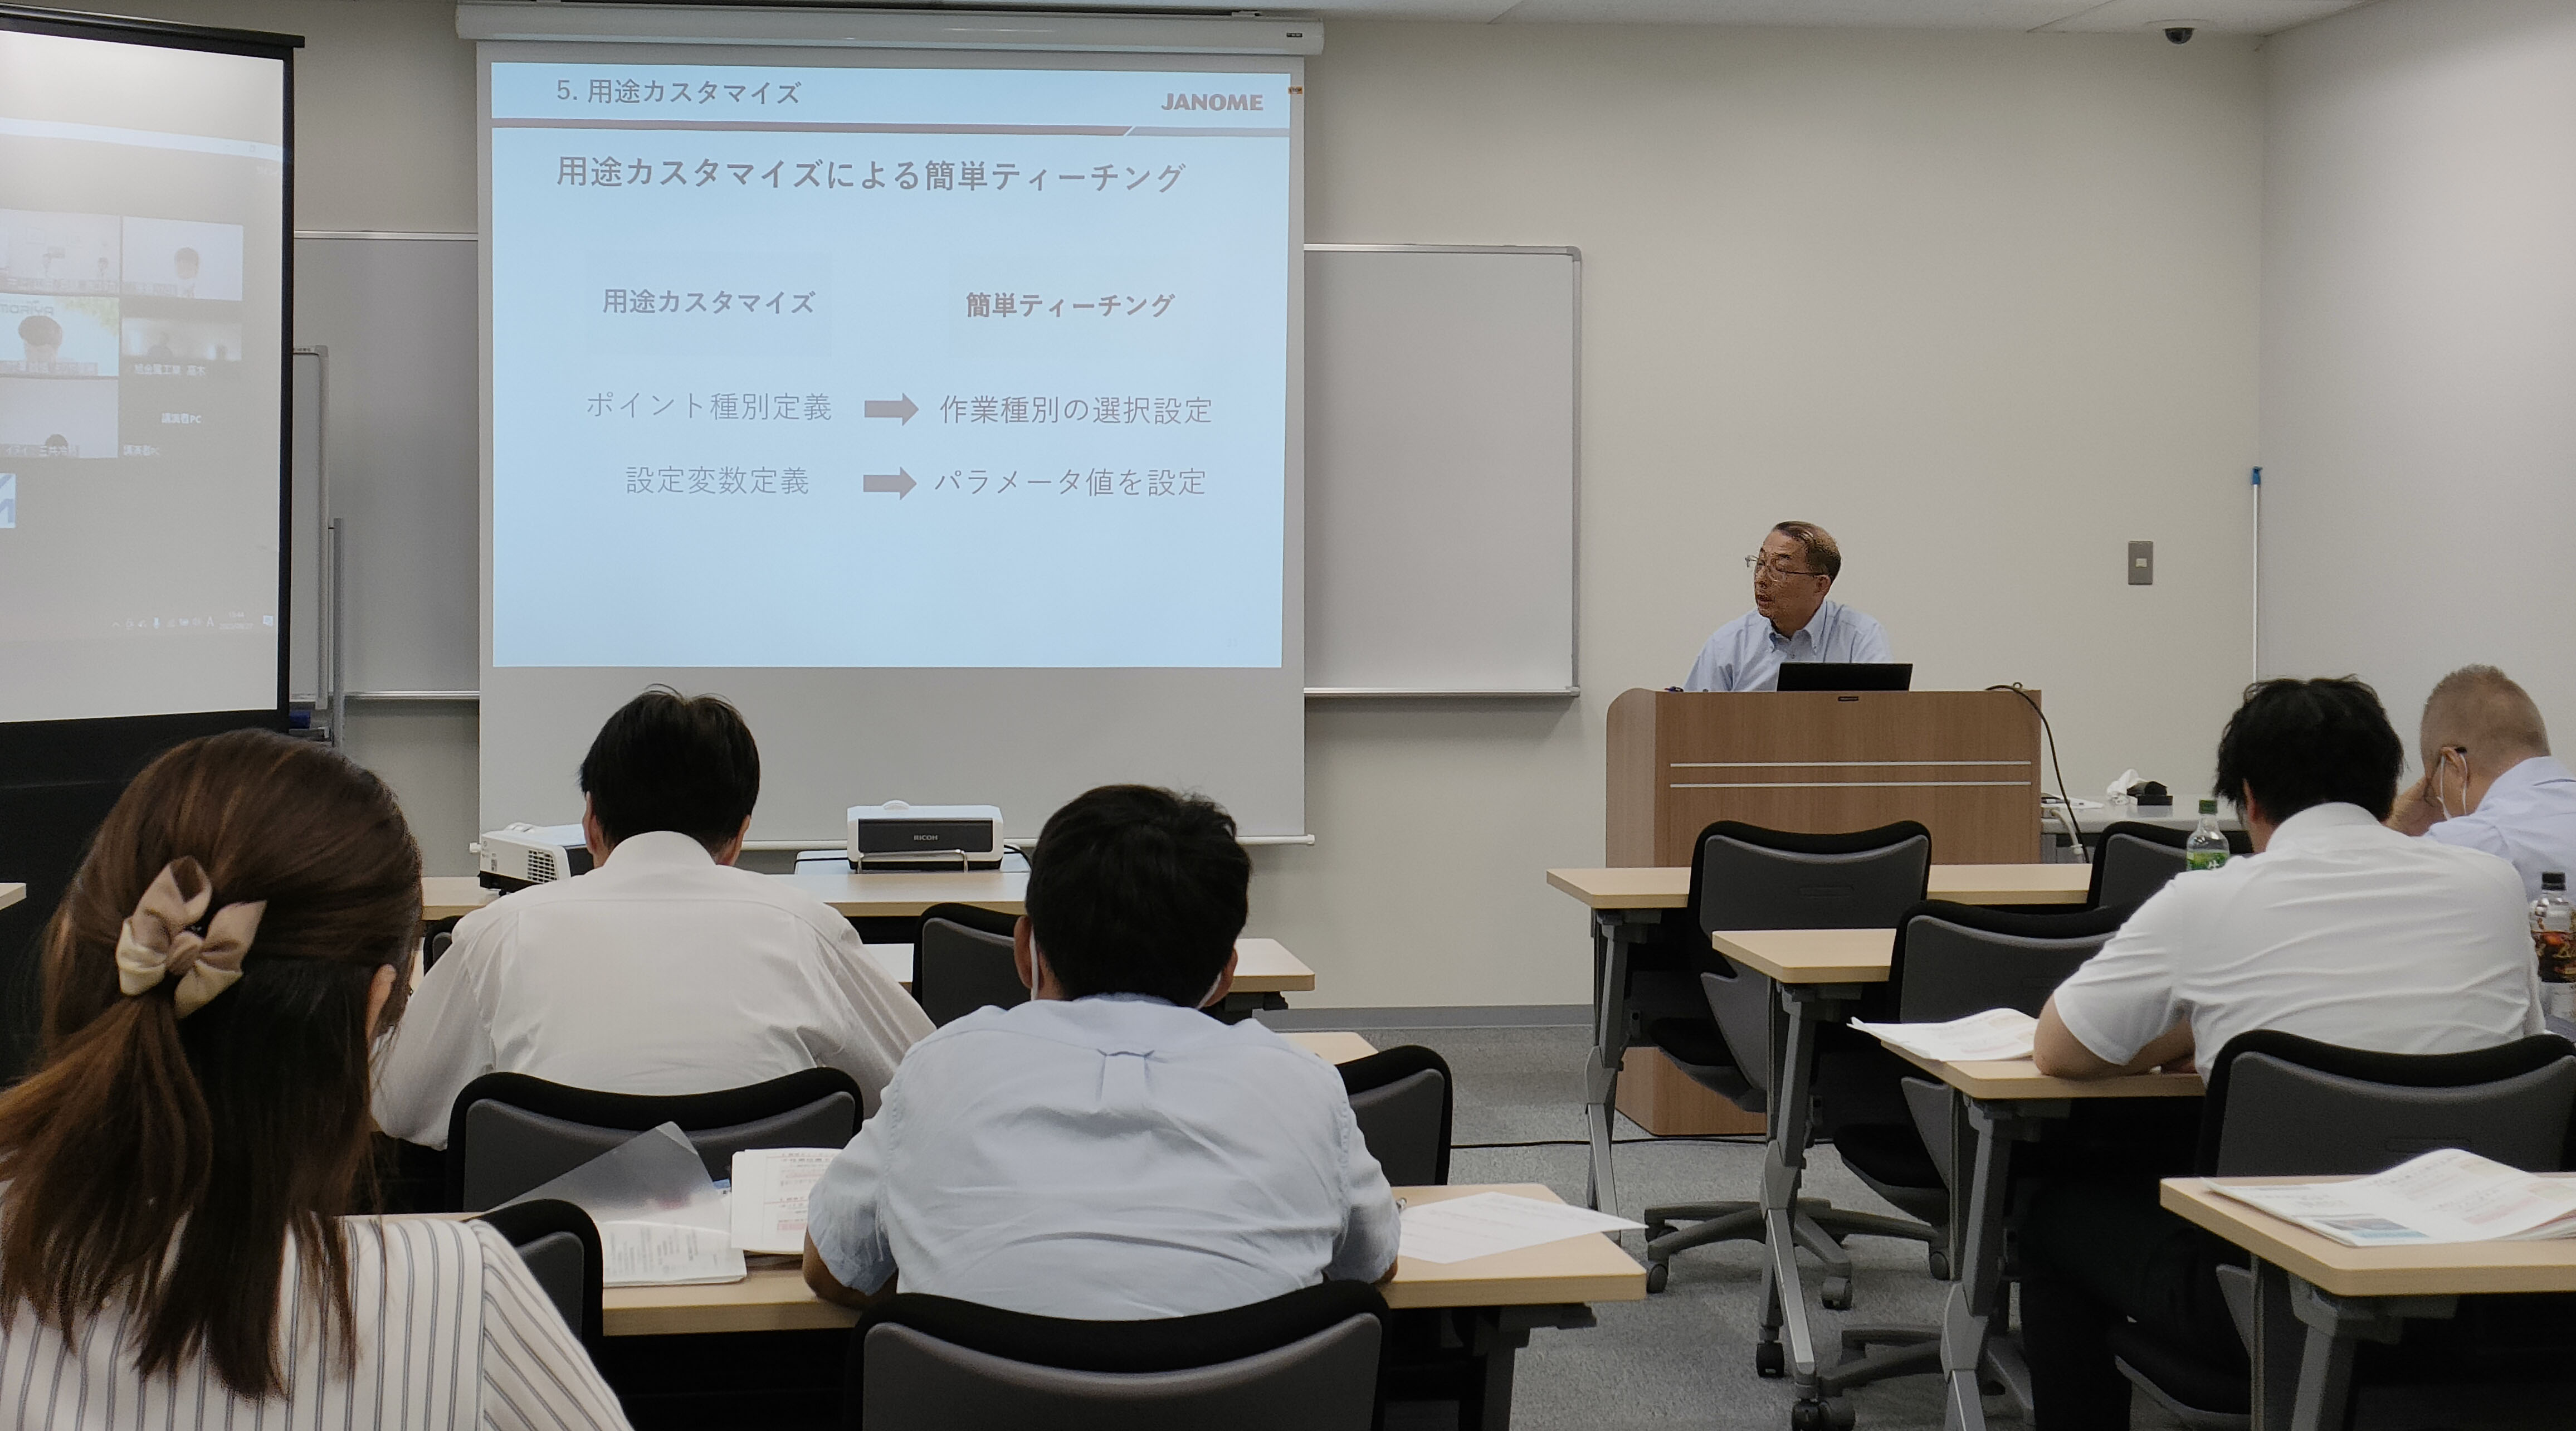 大阪府工業協会「生産支援ロボット導入研究会」講演会